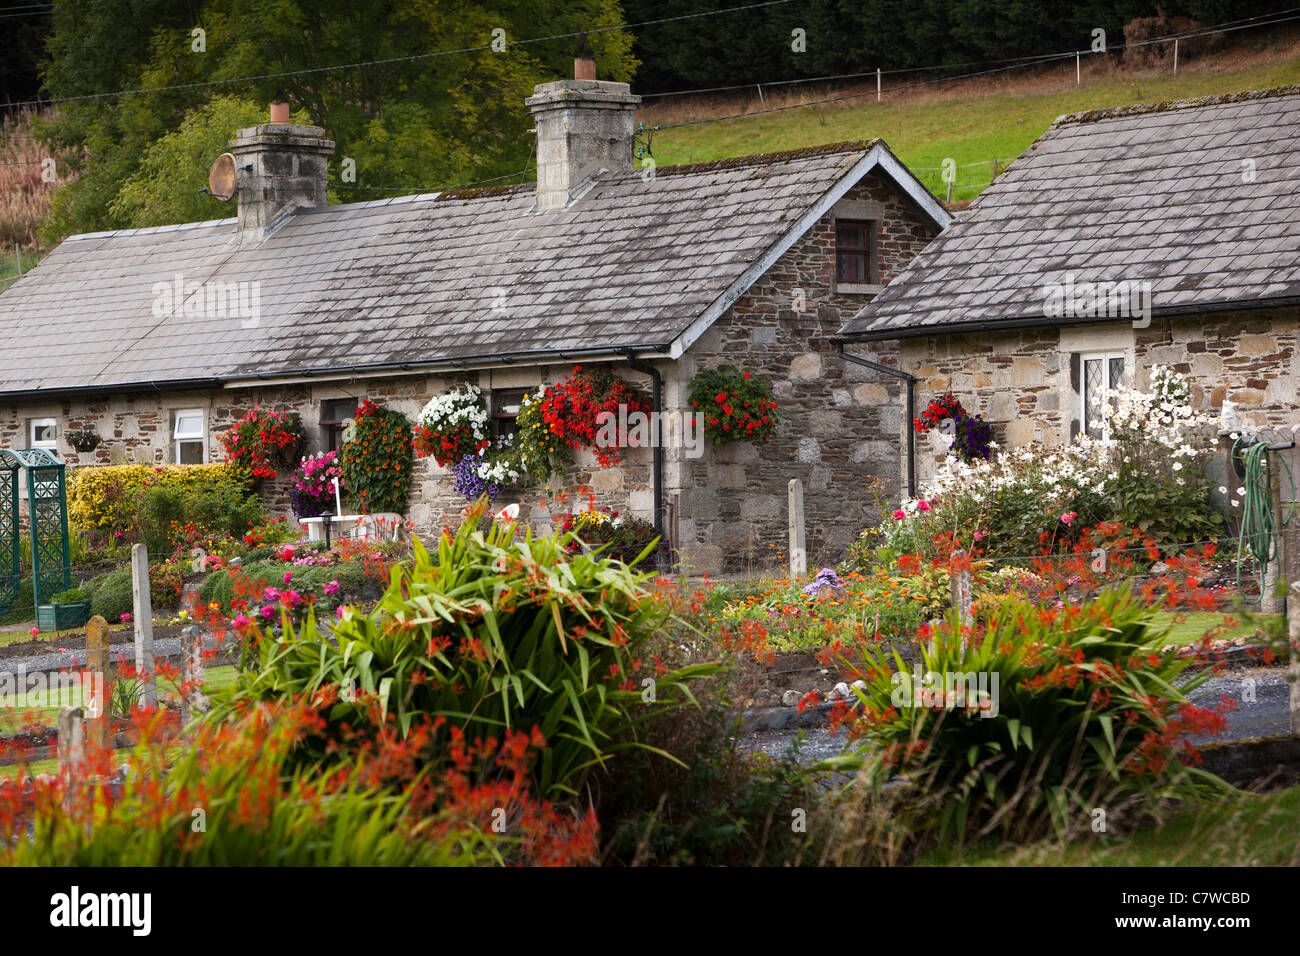 Ireland, Co Wicklow, Shillelagh, flower filled cottage garden in village Stock Photo